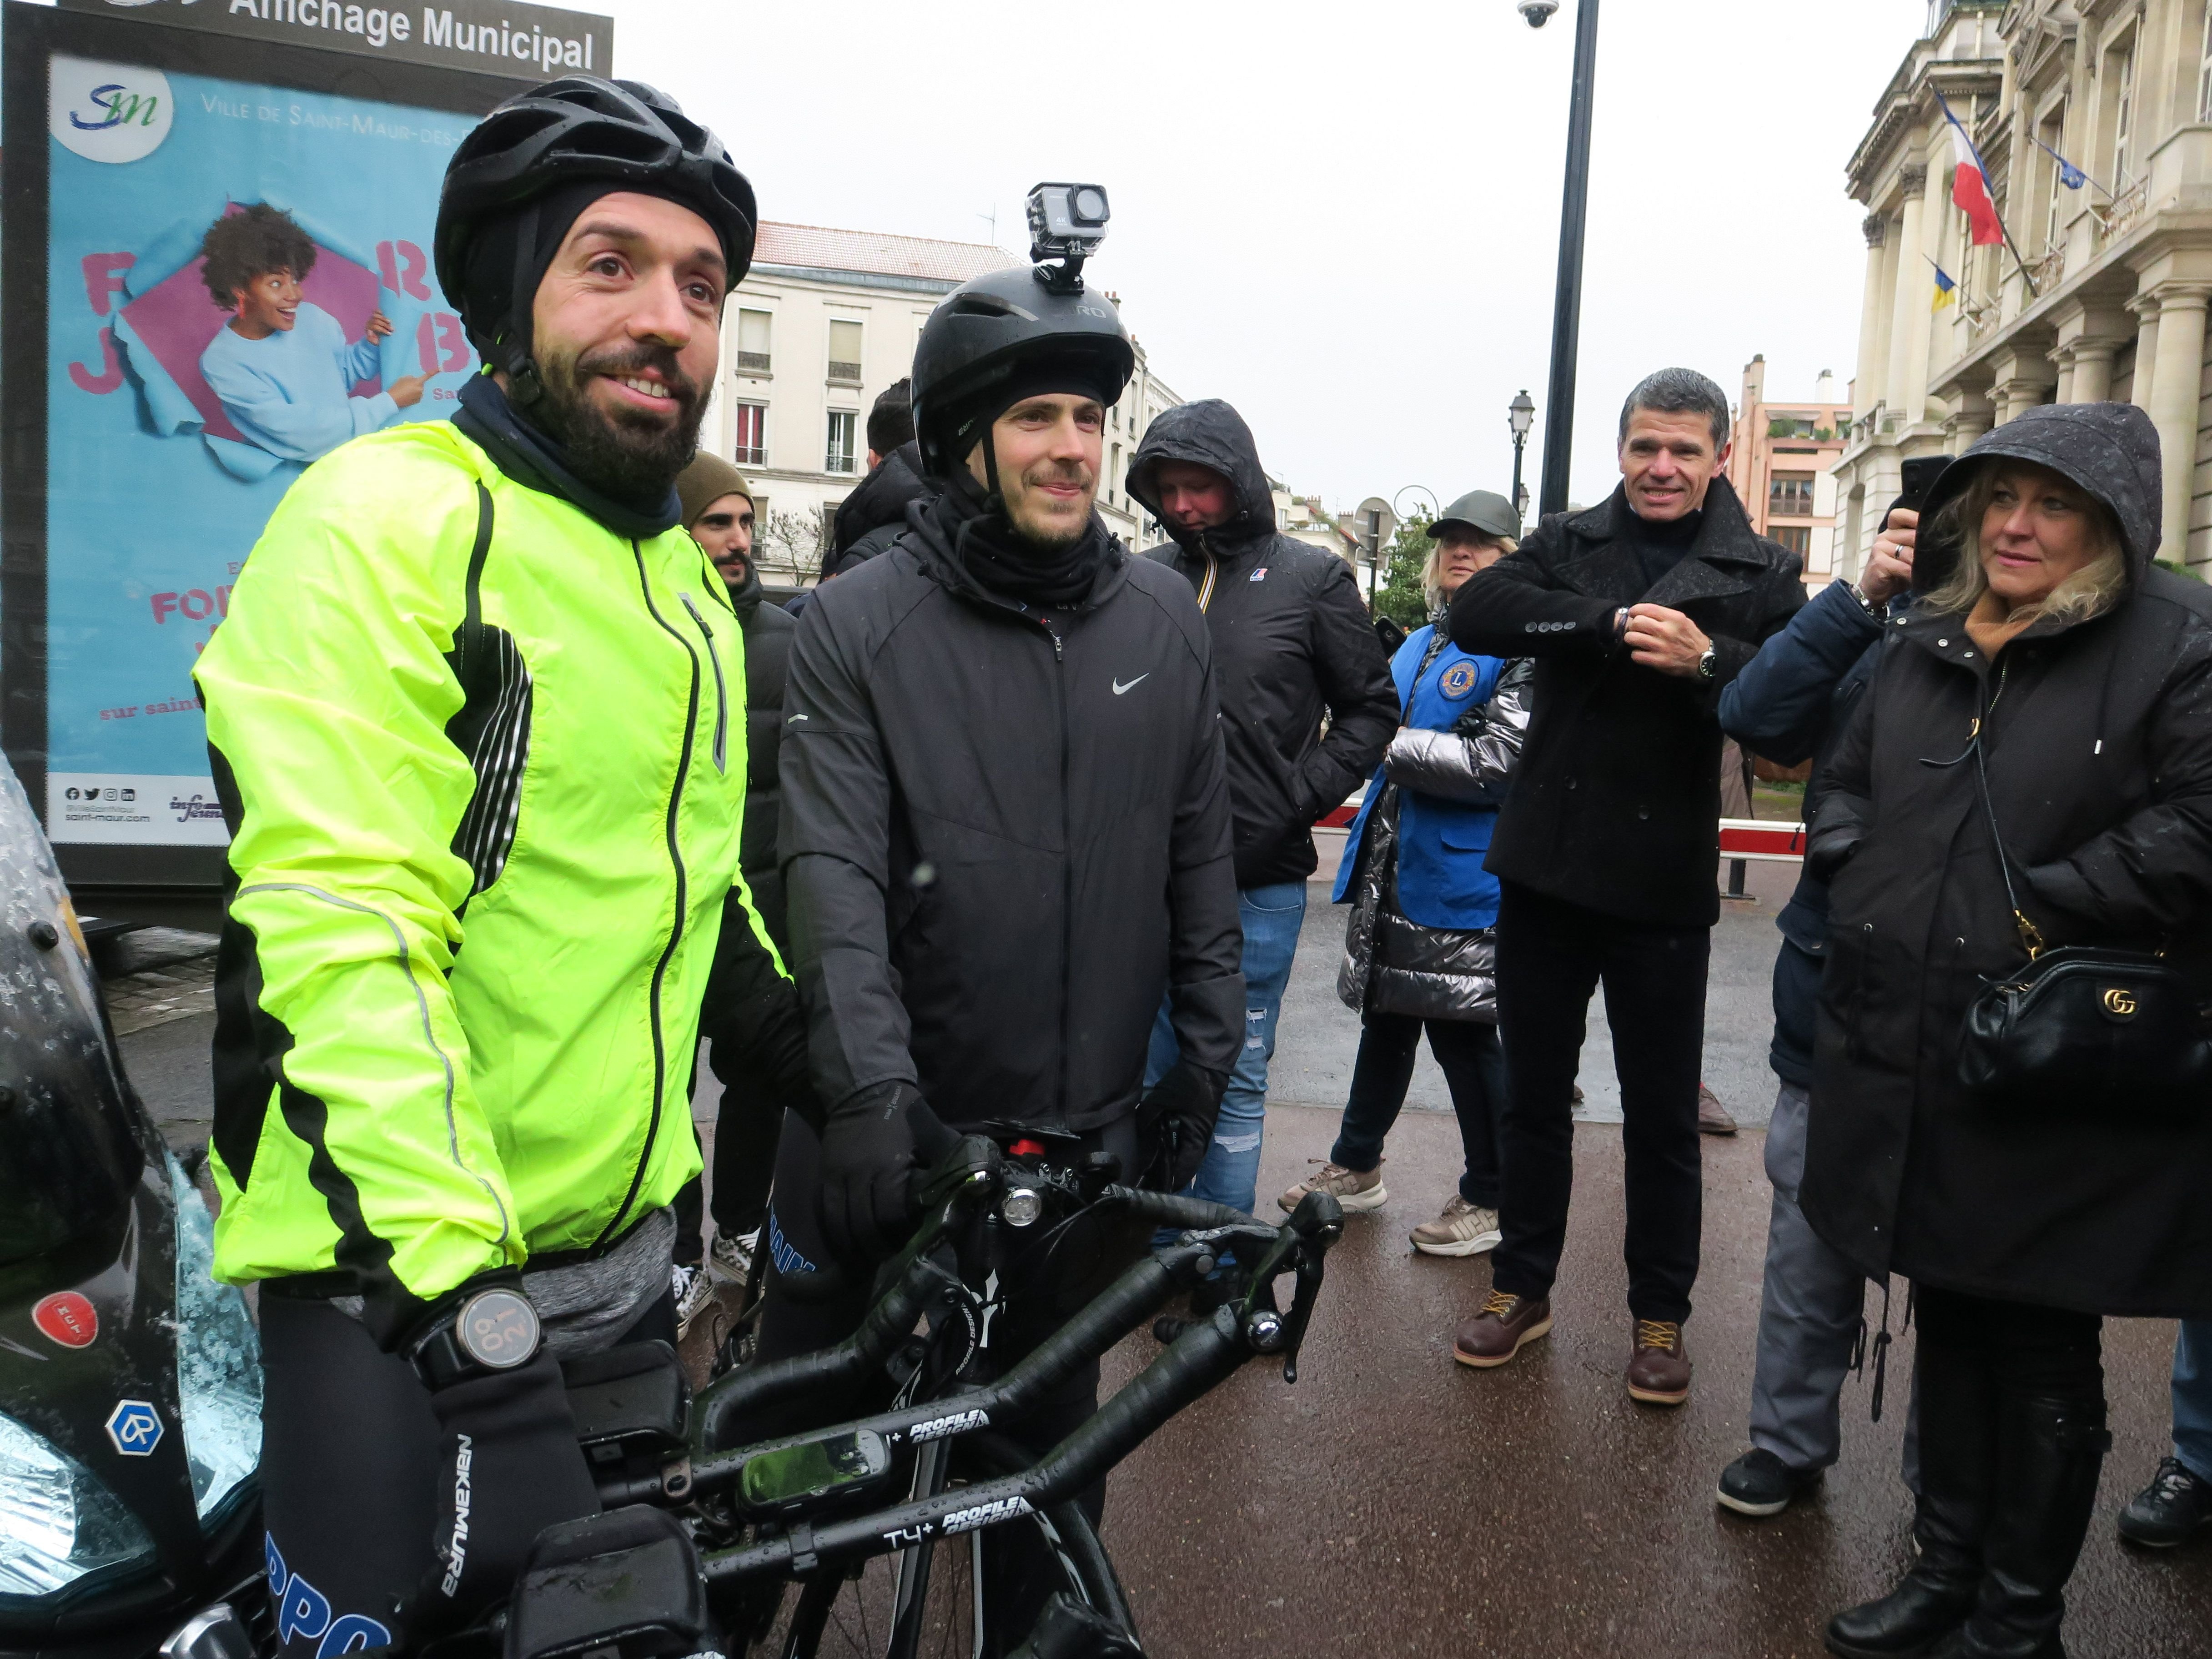 Saint-Maur, vendredi 1er avril 2022. Romain Hardouin (à droite) et sont coach ont pris le départ d'un défi à vélo de 230 km jusqu'à Deauville pour promouvoir le don de moelle osseuse. LP/Laure Parny